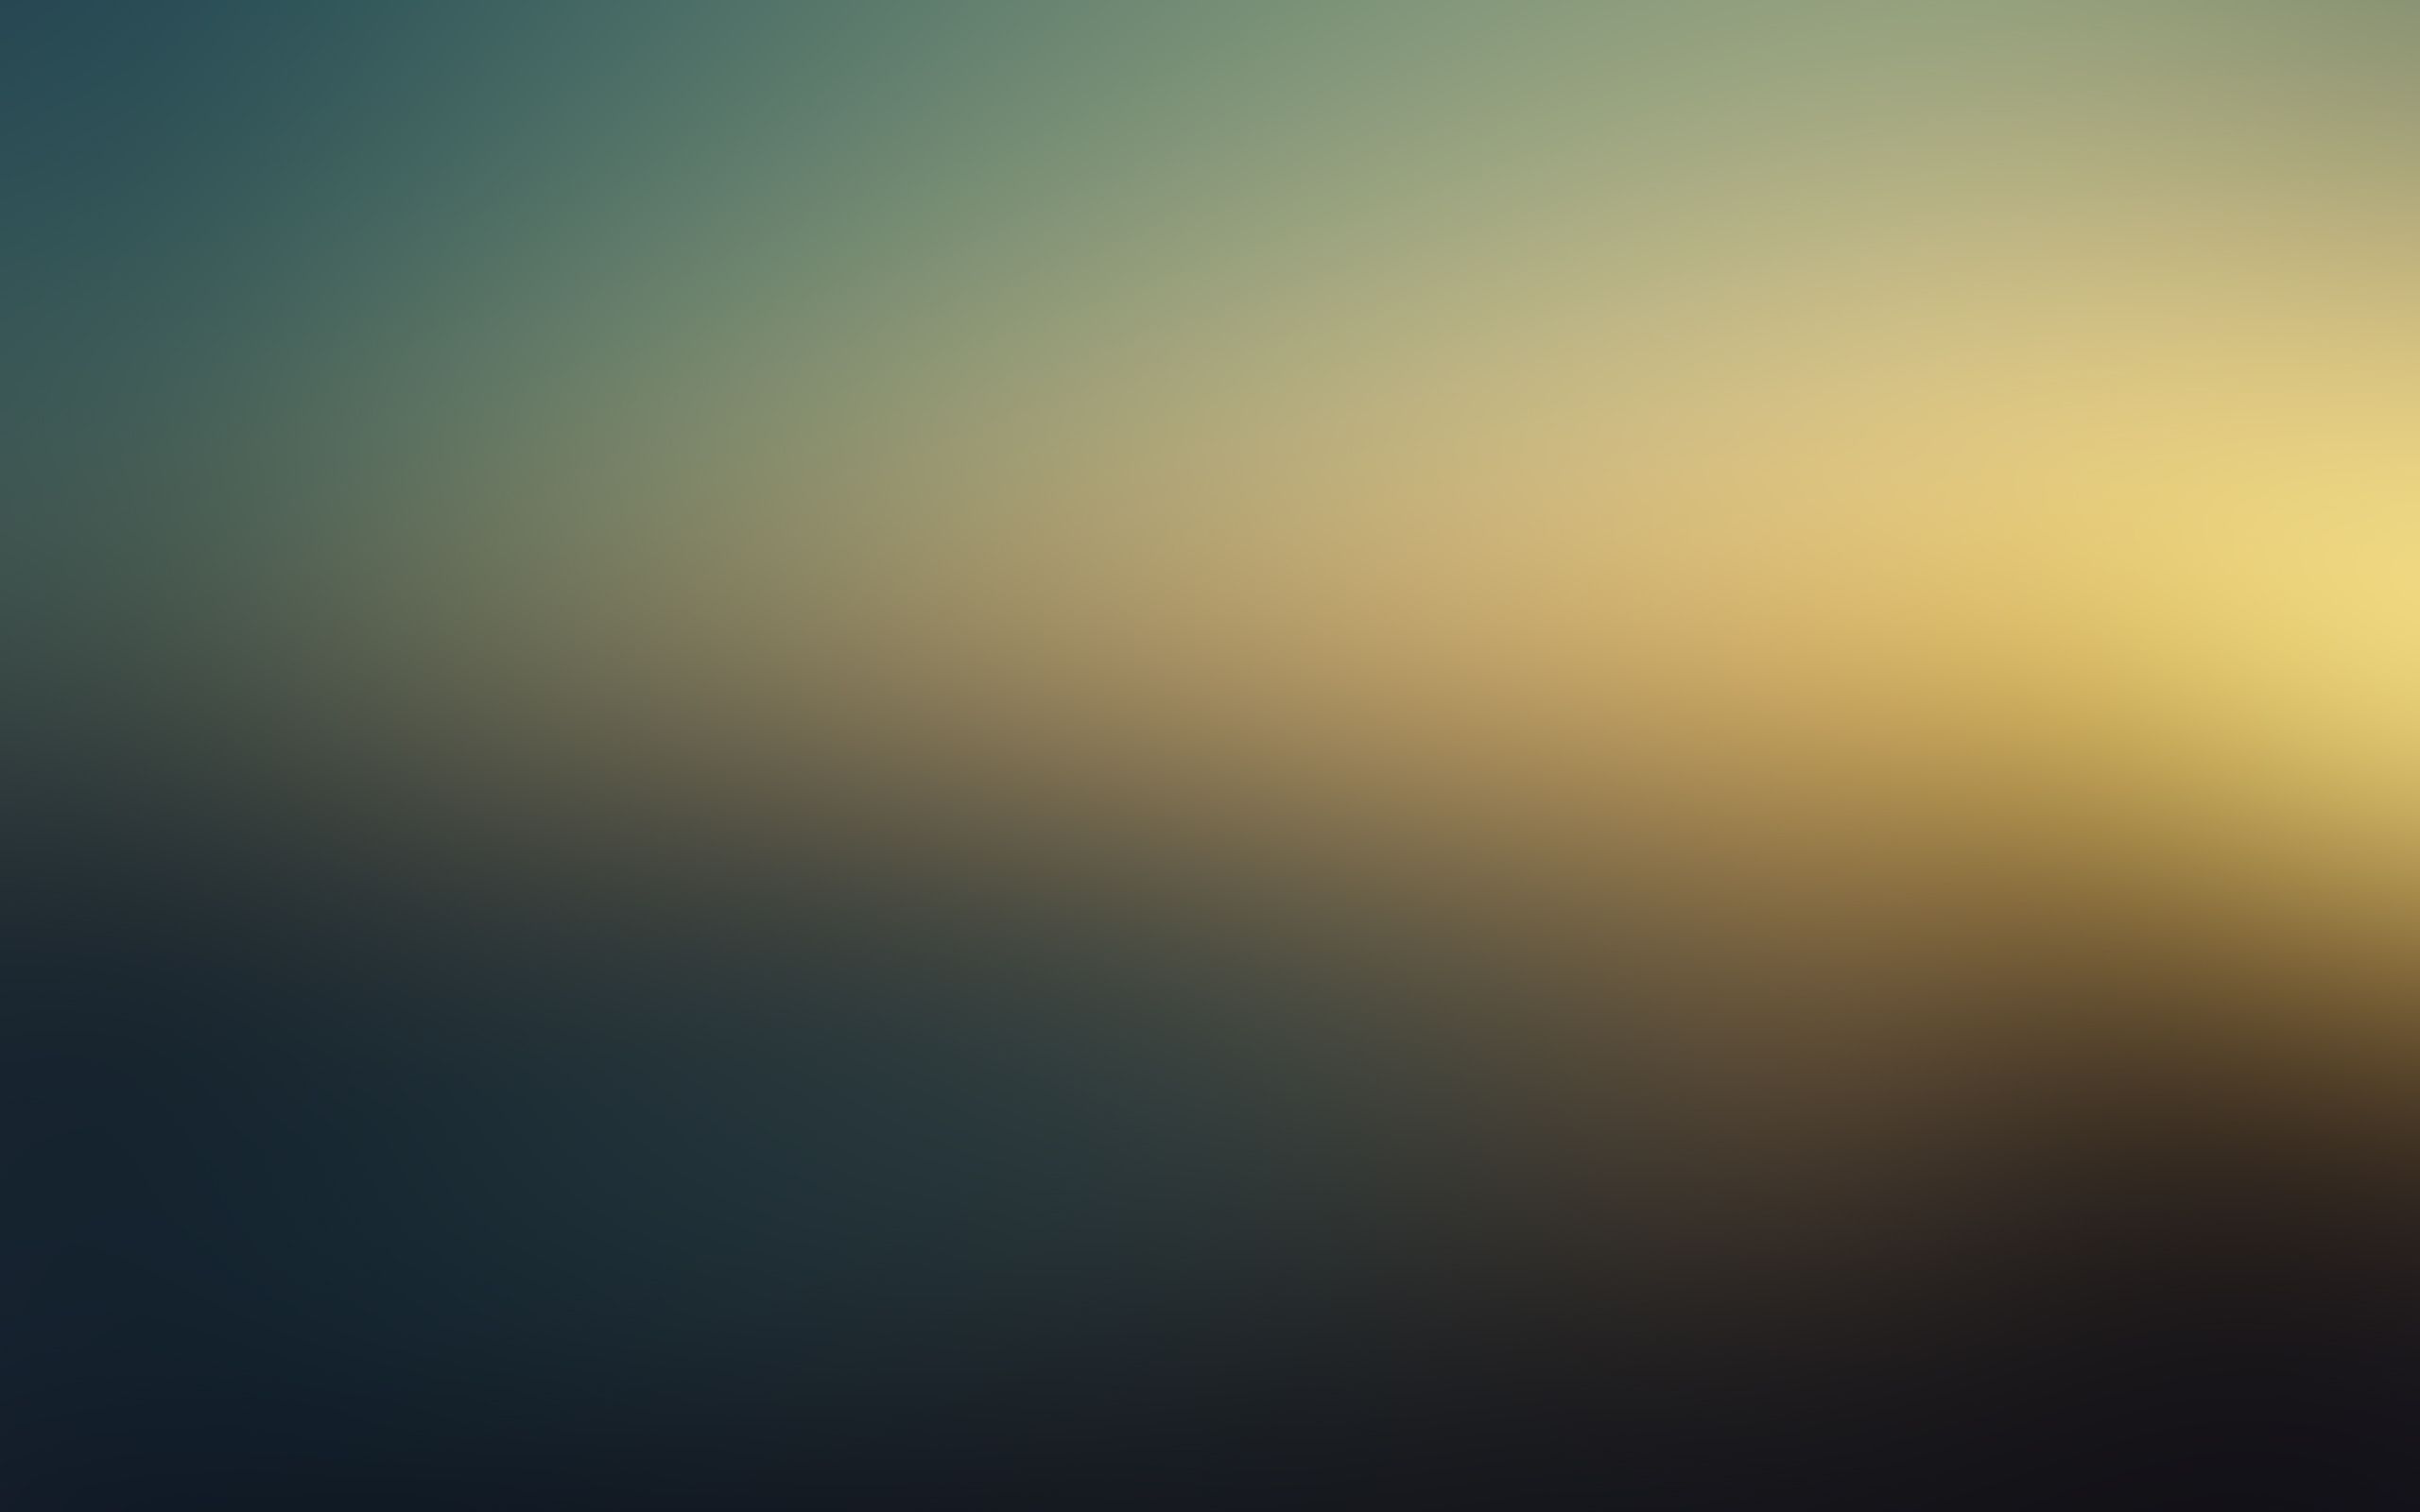 HD Blur Wallpaper, descargue una hermosa imagen de fondo borroso en